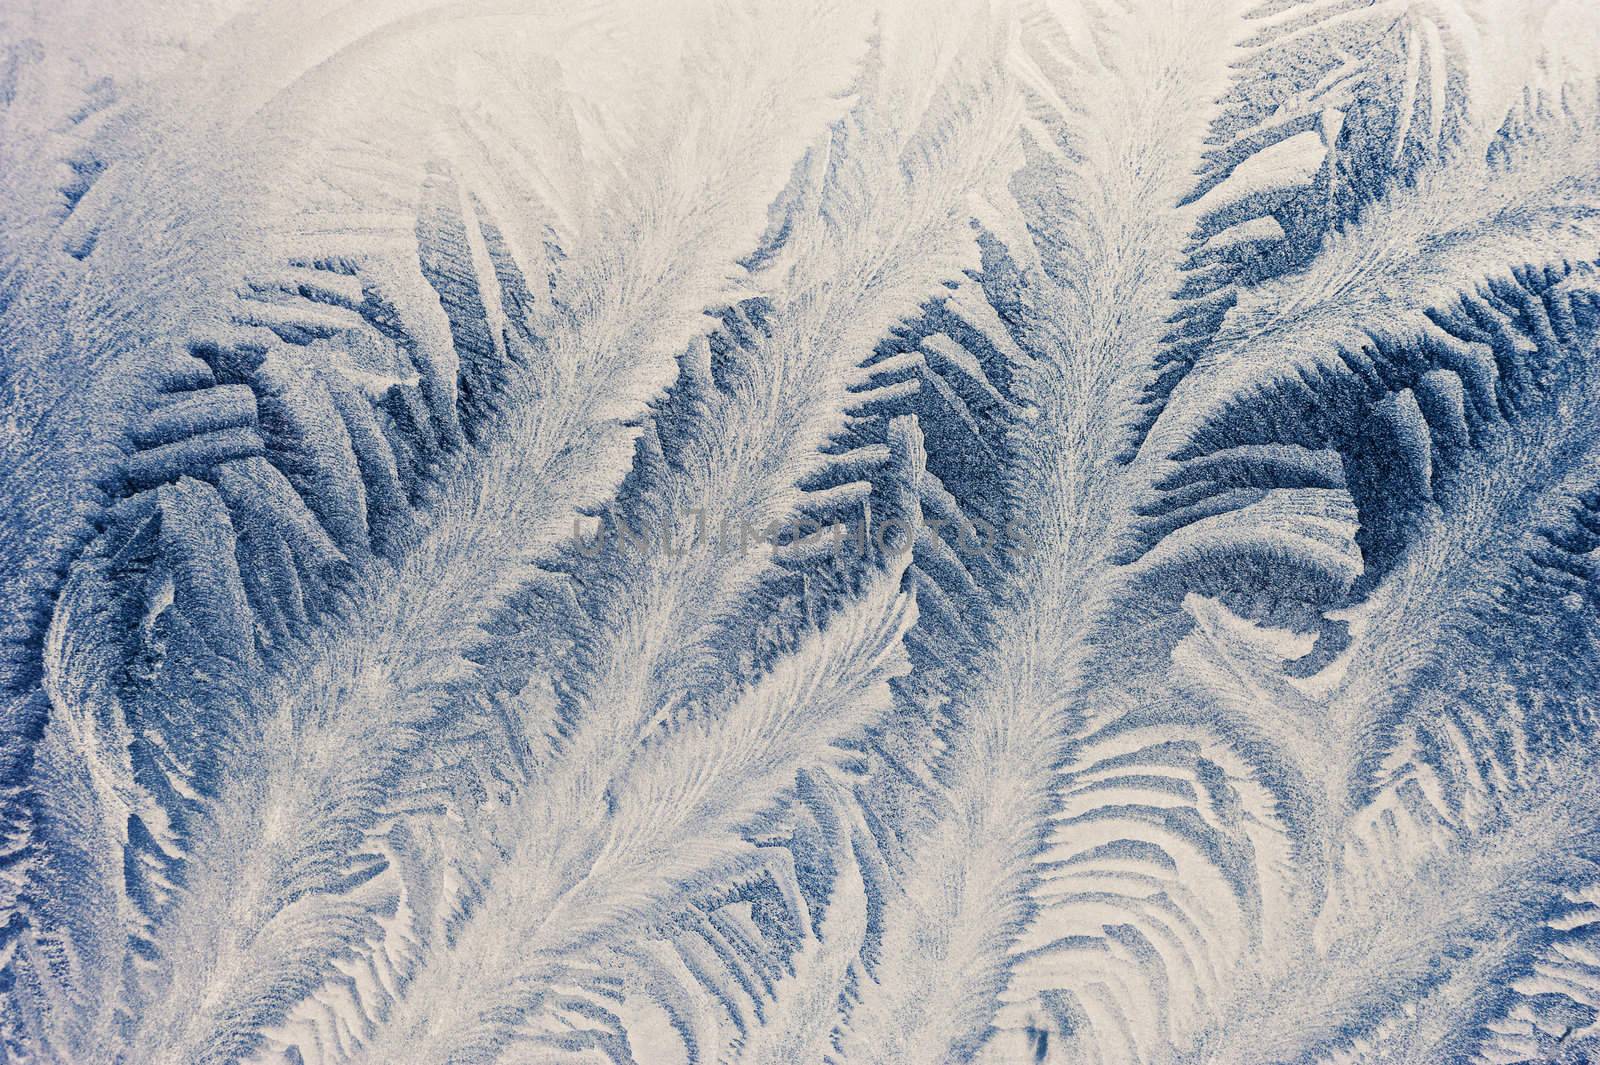 Frosty pattern on window in winter season